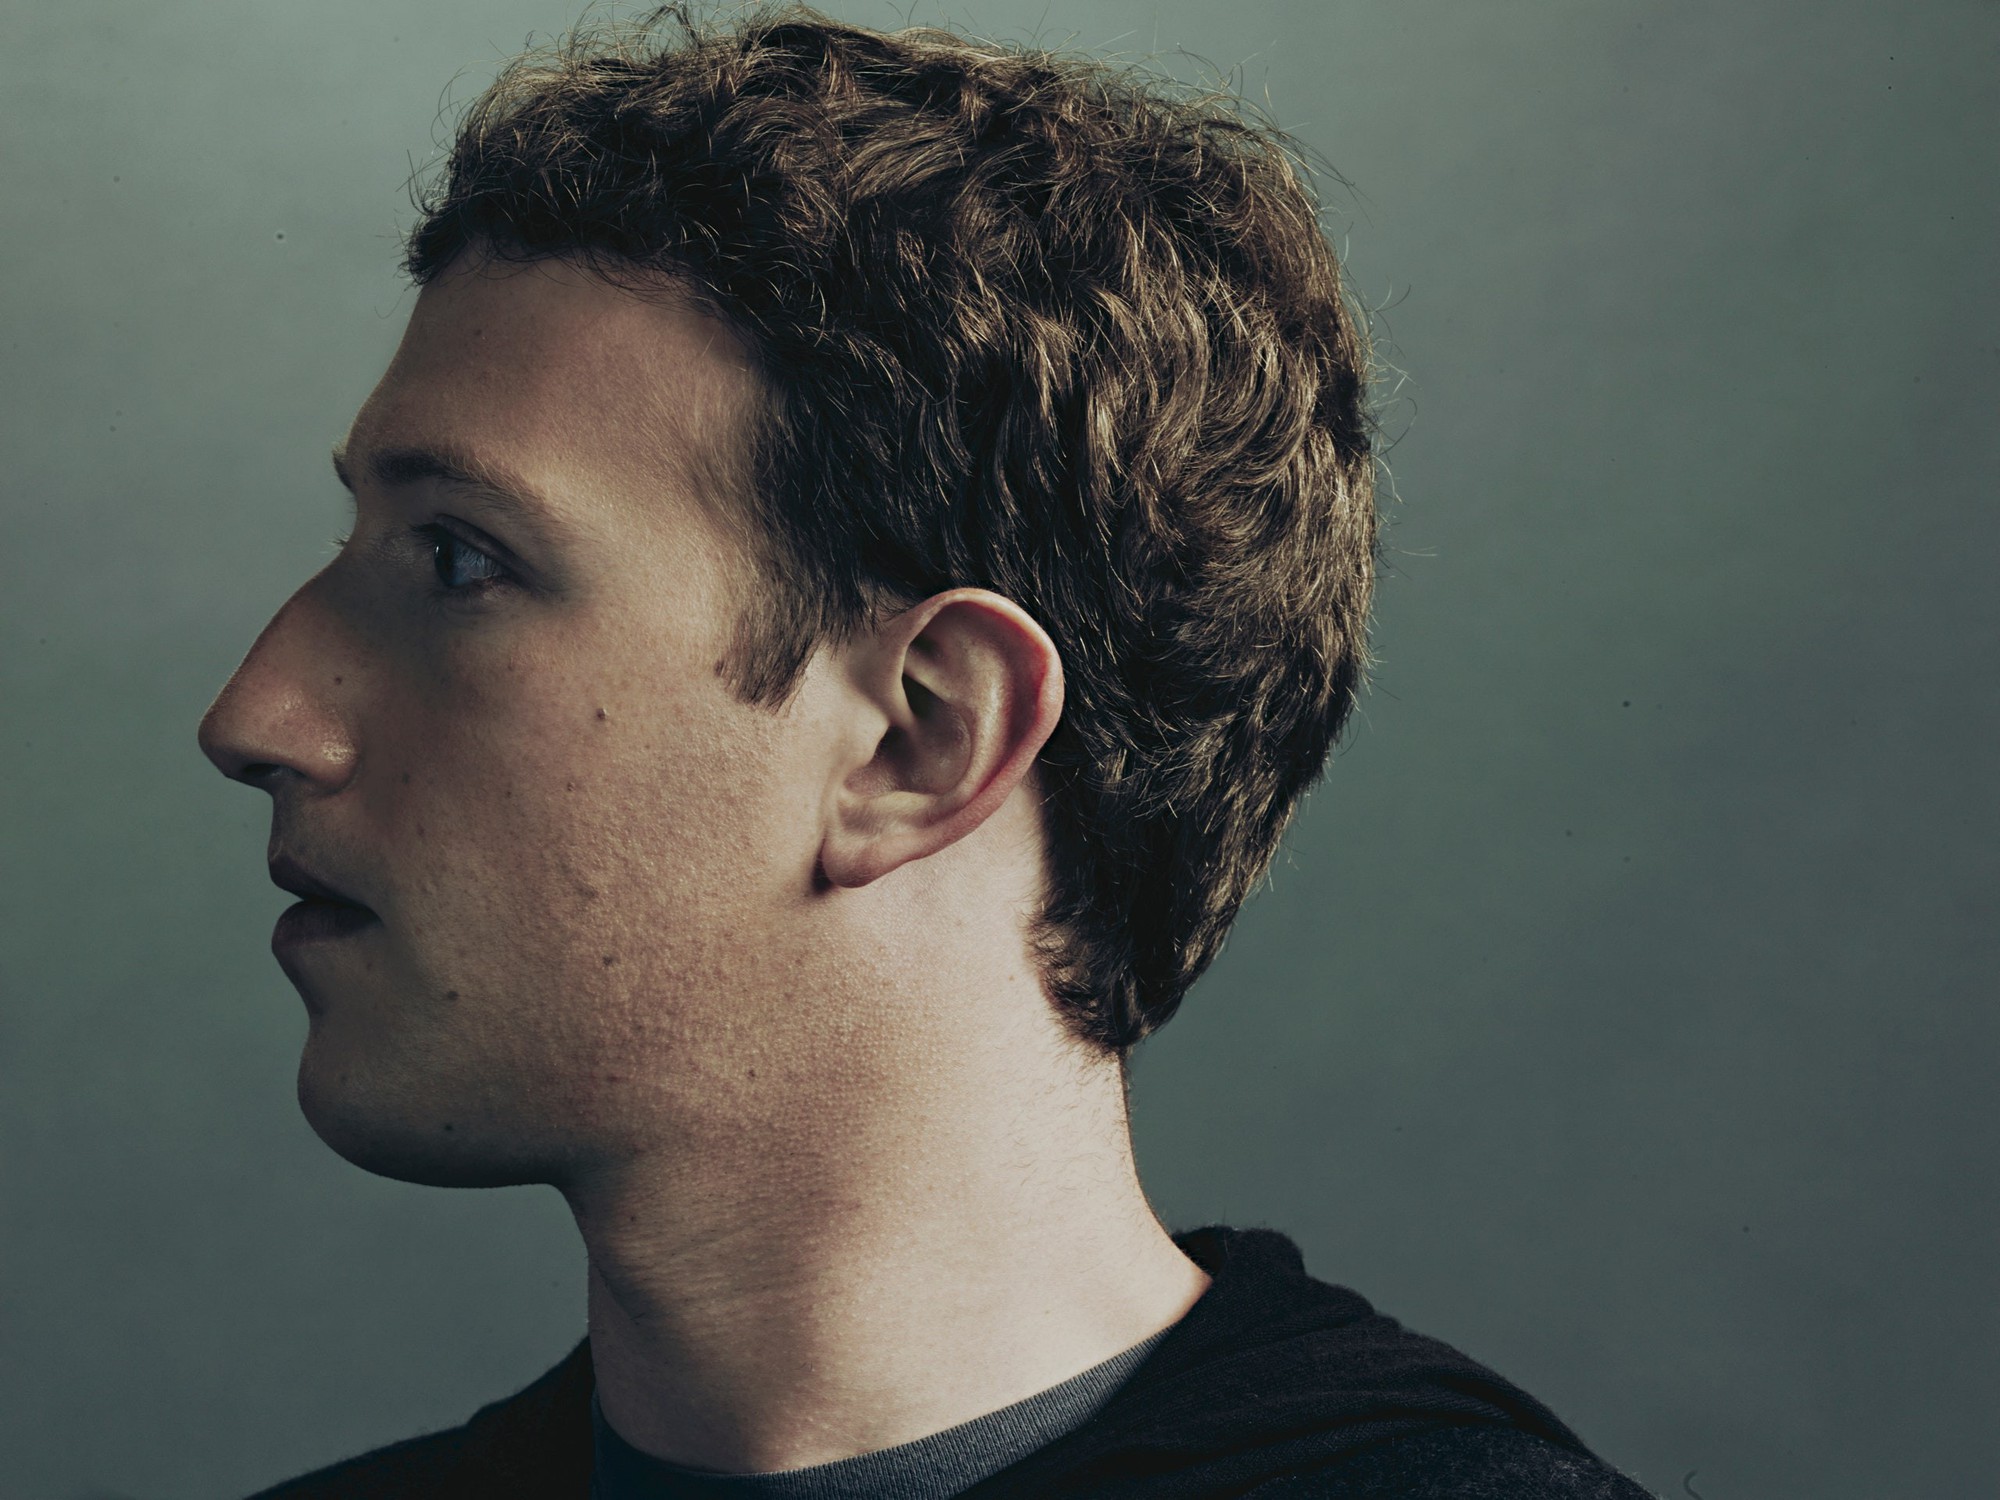 Bão sa thải lần 2 trong giới công nghệ bắt đầu: Học theo bẫy ăn xổi 1.000 tỷ USD của Mark Zuckerberg, các công ty không tập trung sáng tạo mà chỉ lo đuổi việc, hàng chục nghìn lao động sẽ sớm mất việc- Ảnh 3.